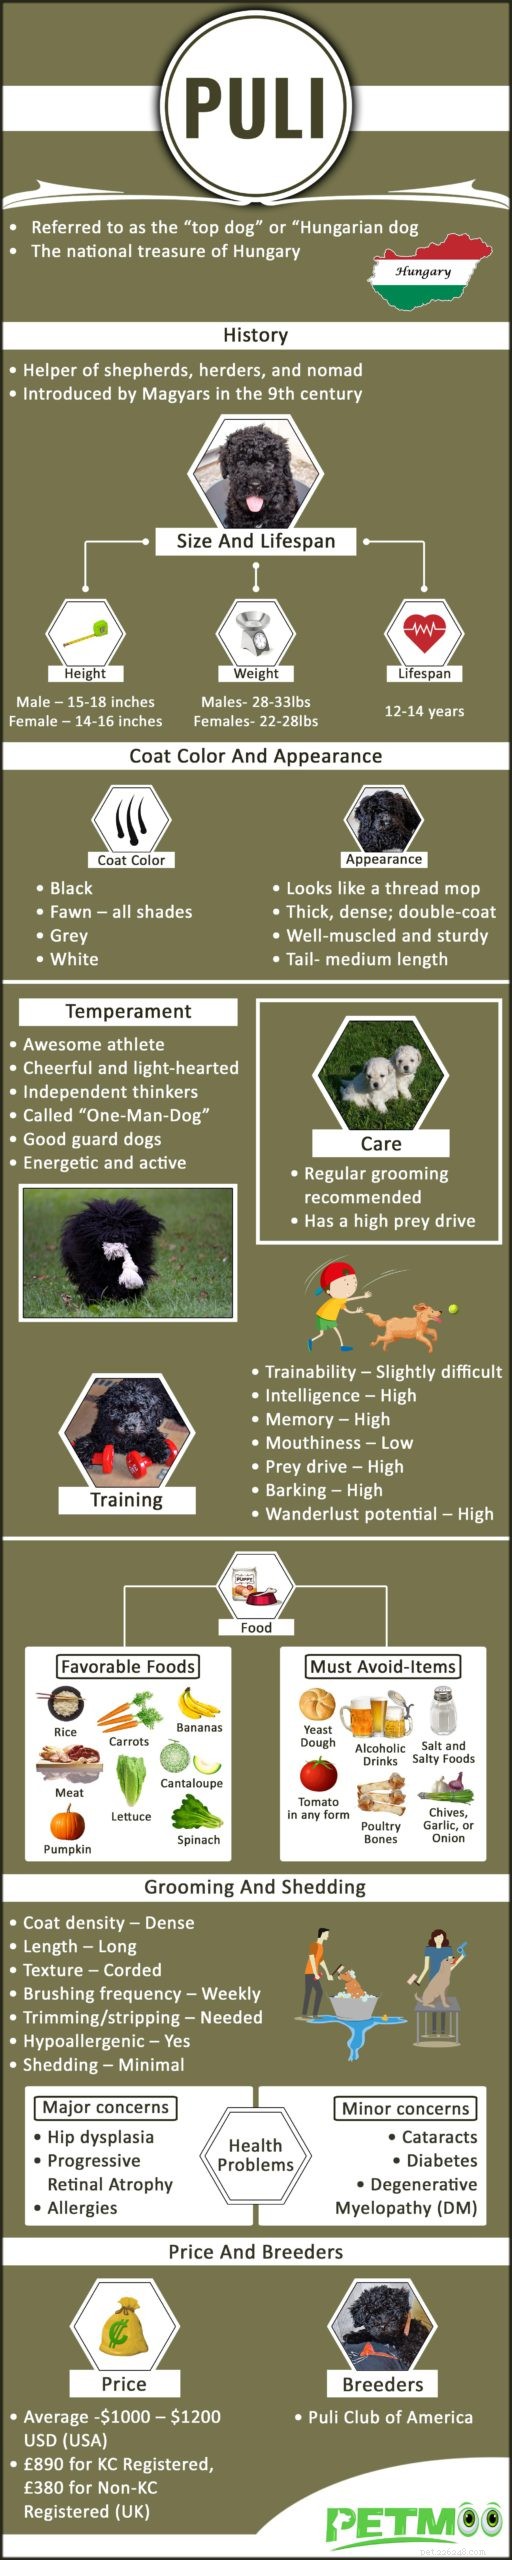 プーリー–犬の品種に関する情報とトレーニングのヒント